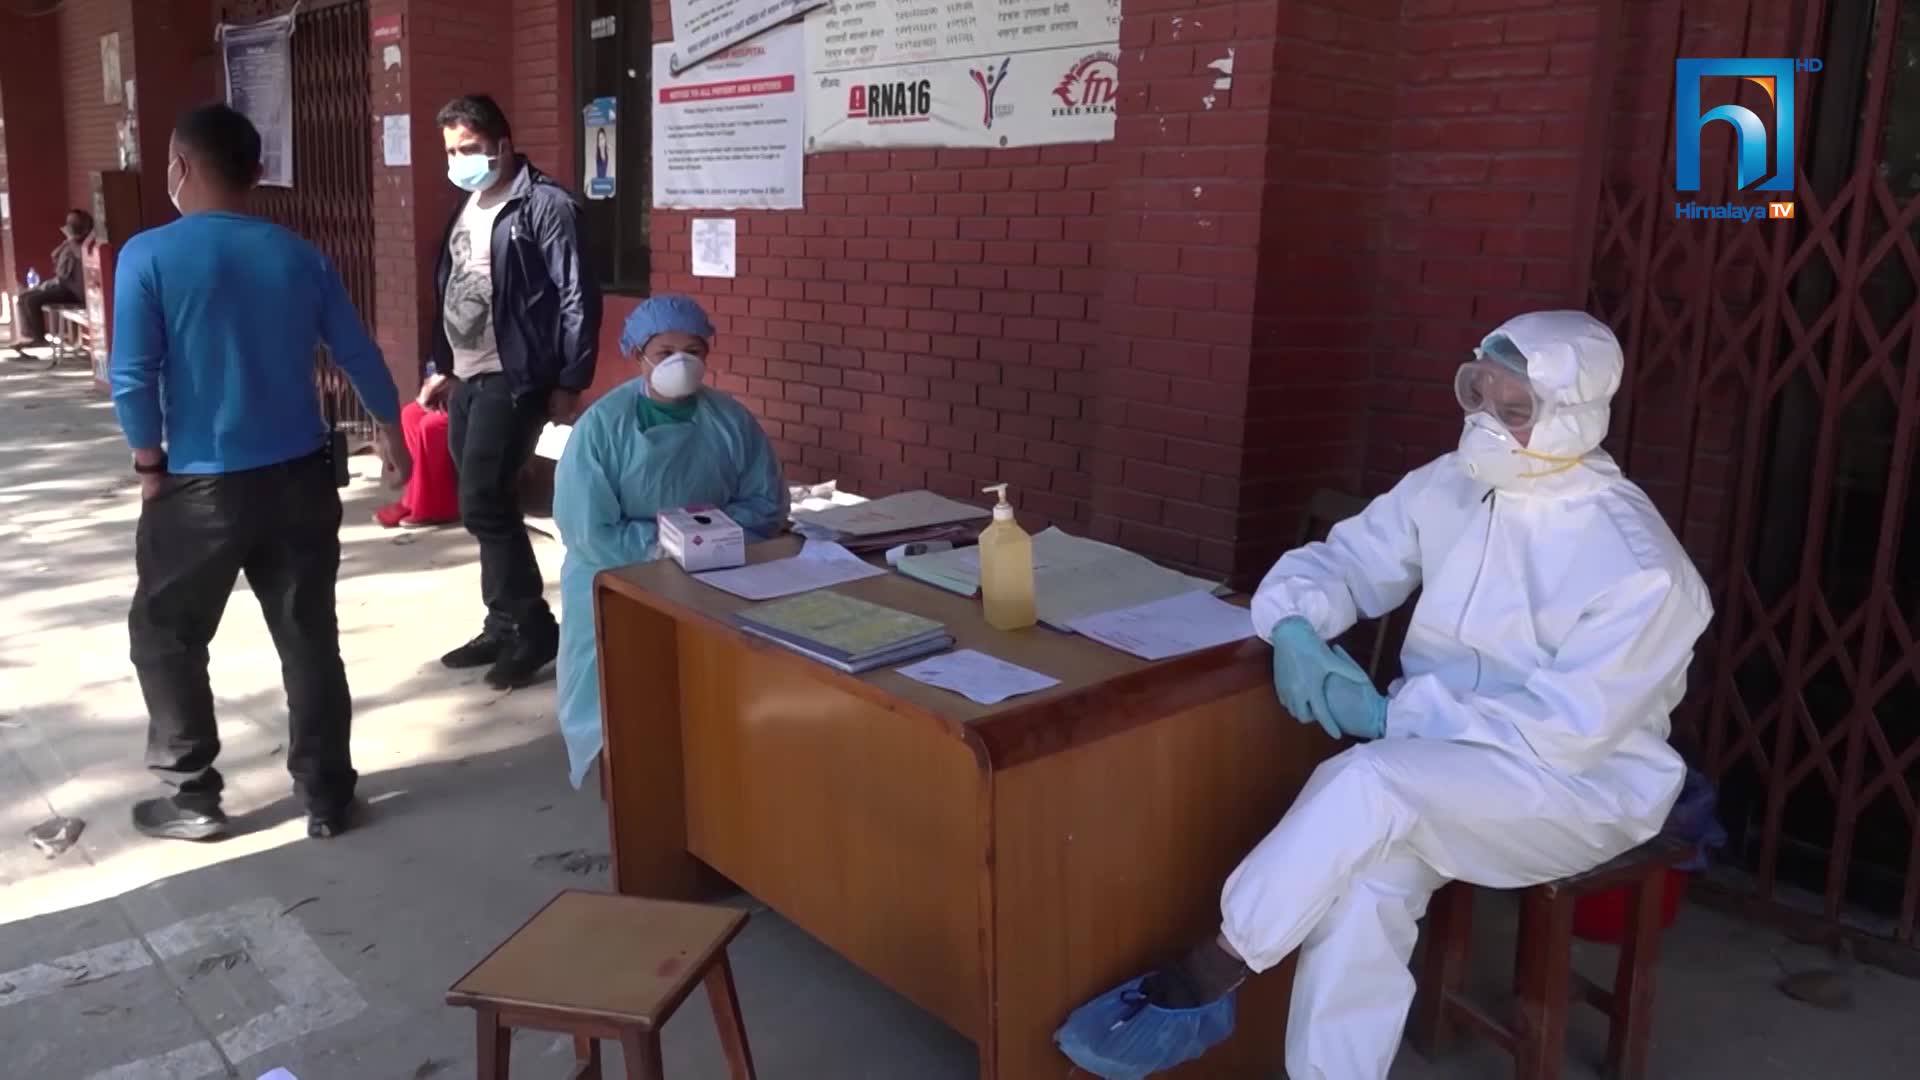 काठमाडौंका सबै सरकारी अस्पताल कोभिड अस्पताल, अरु बिरामी कहाँ जाने ? (भिडियोसहित)